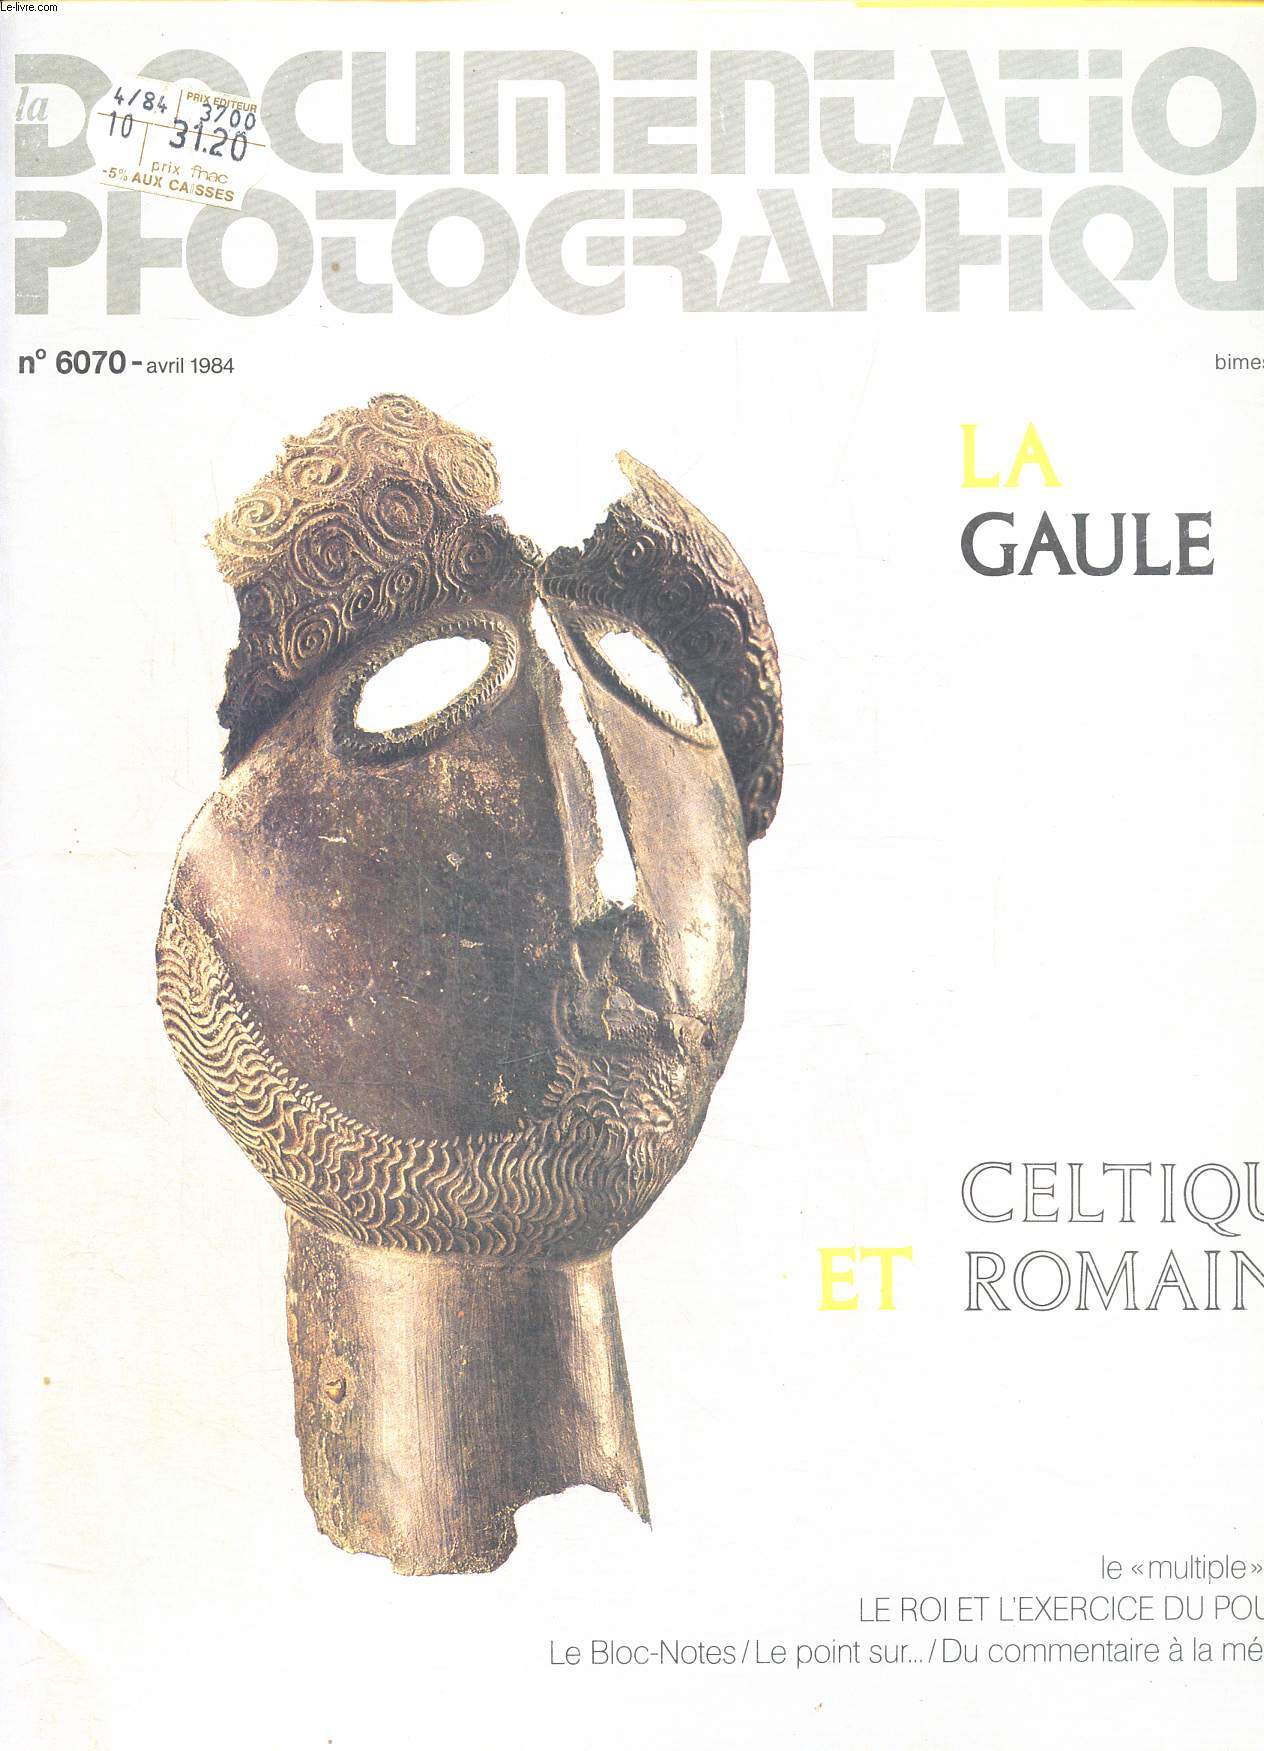 La Gaule celtique et romaine - La documentation photographique- N6070 - avril 1984